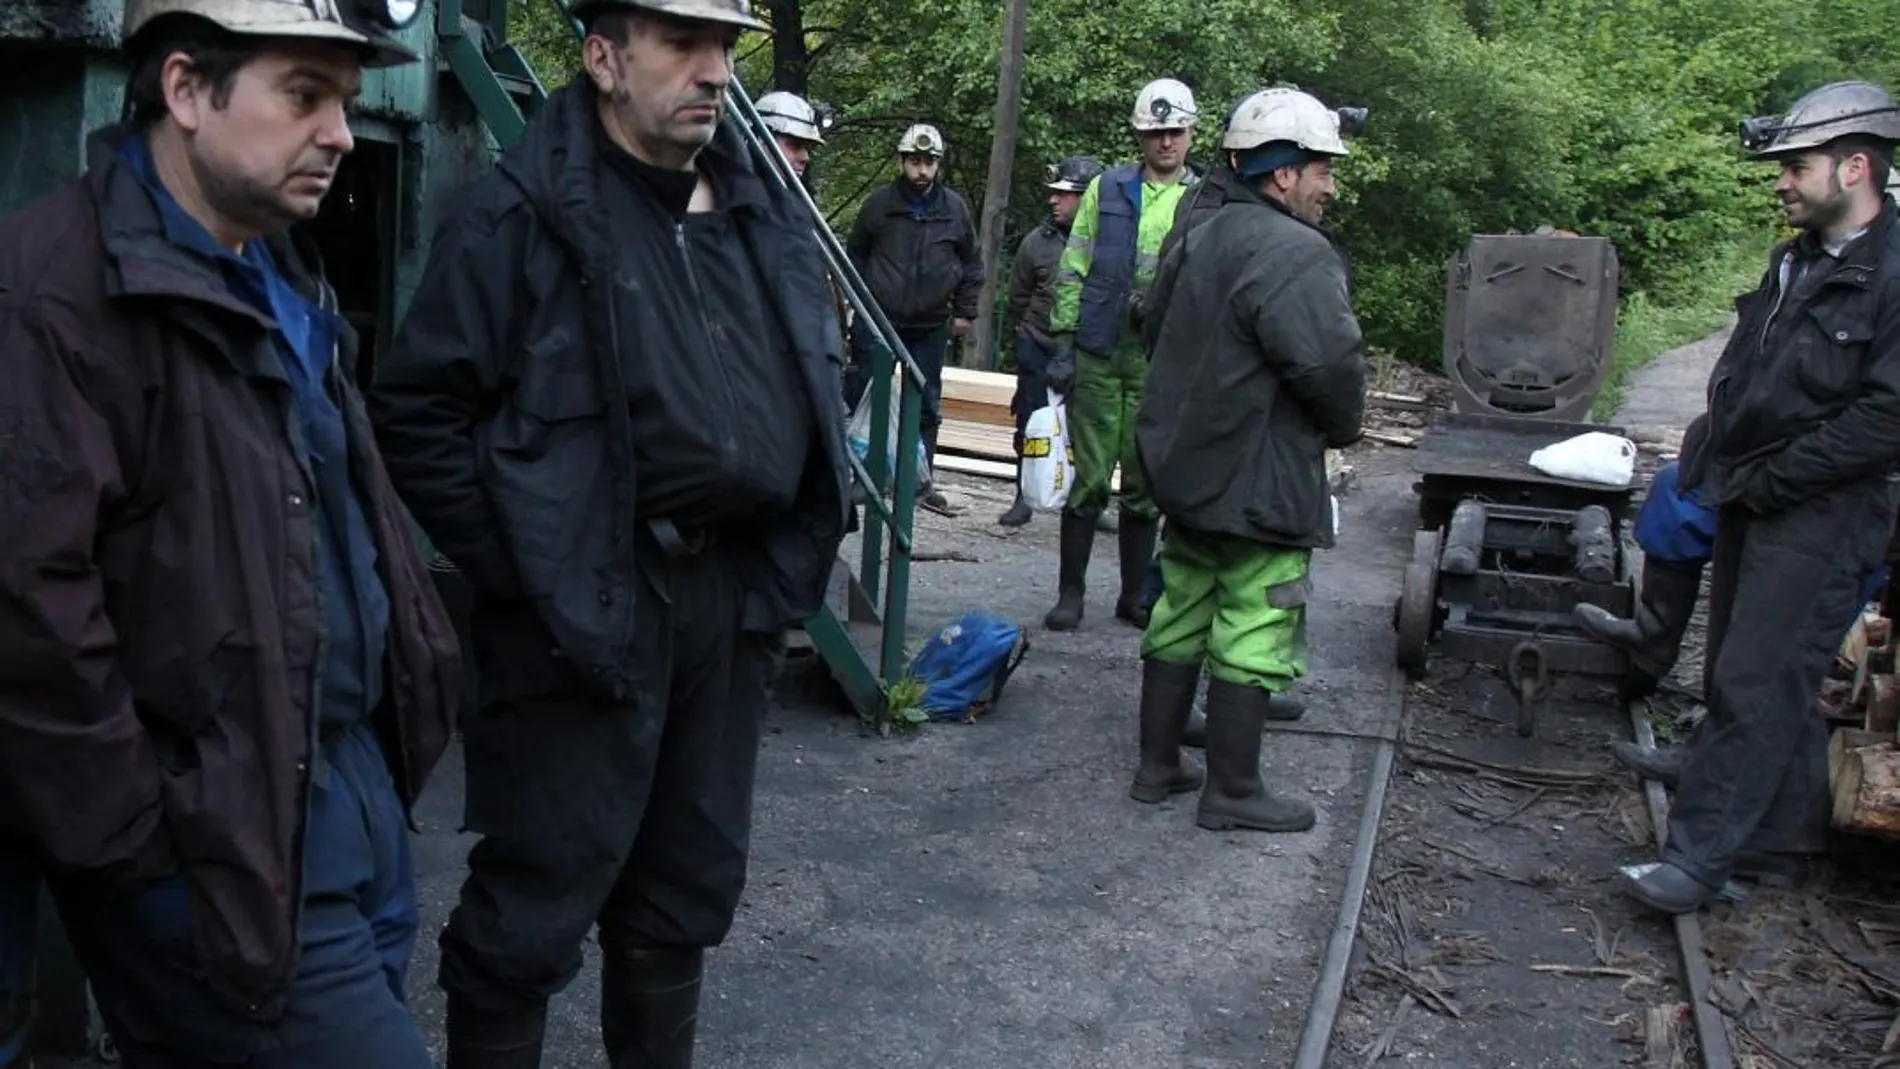 Mineros en la mina del pozo Casares en Tremor de Arriba (León), una de las últimas minas de interior en cerrar en la comarca de El Bierzo